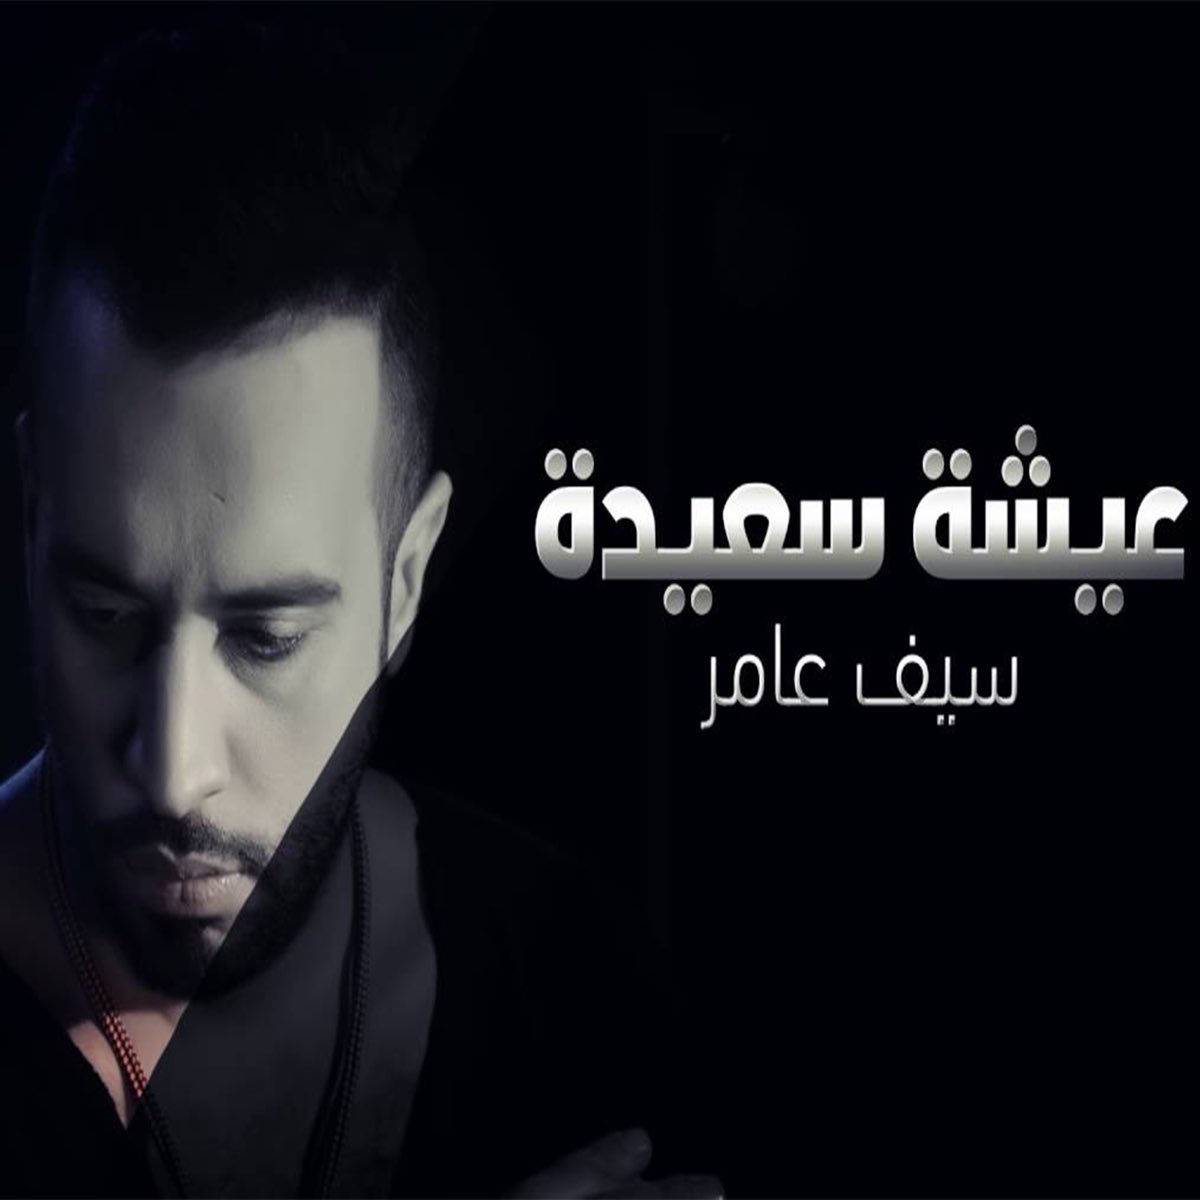 عيشه سعيده - Single by Saif Amer on Apple Music